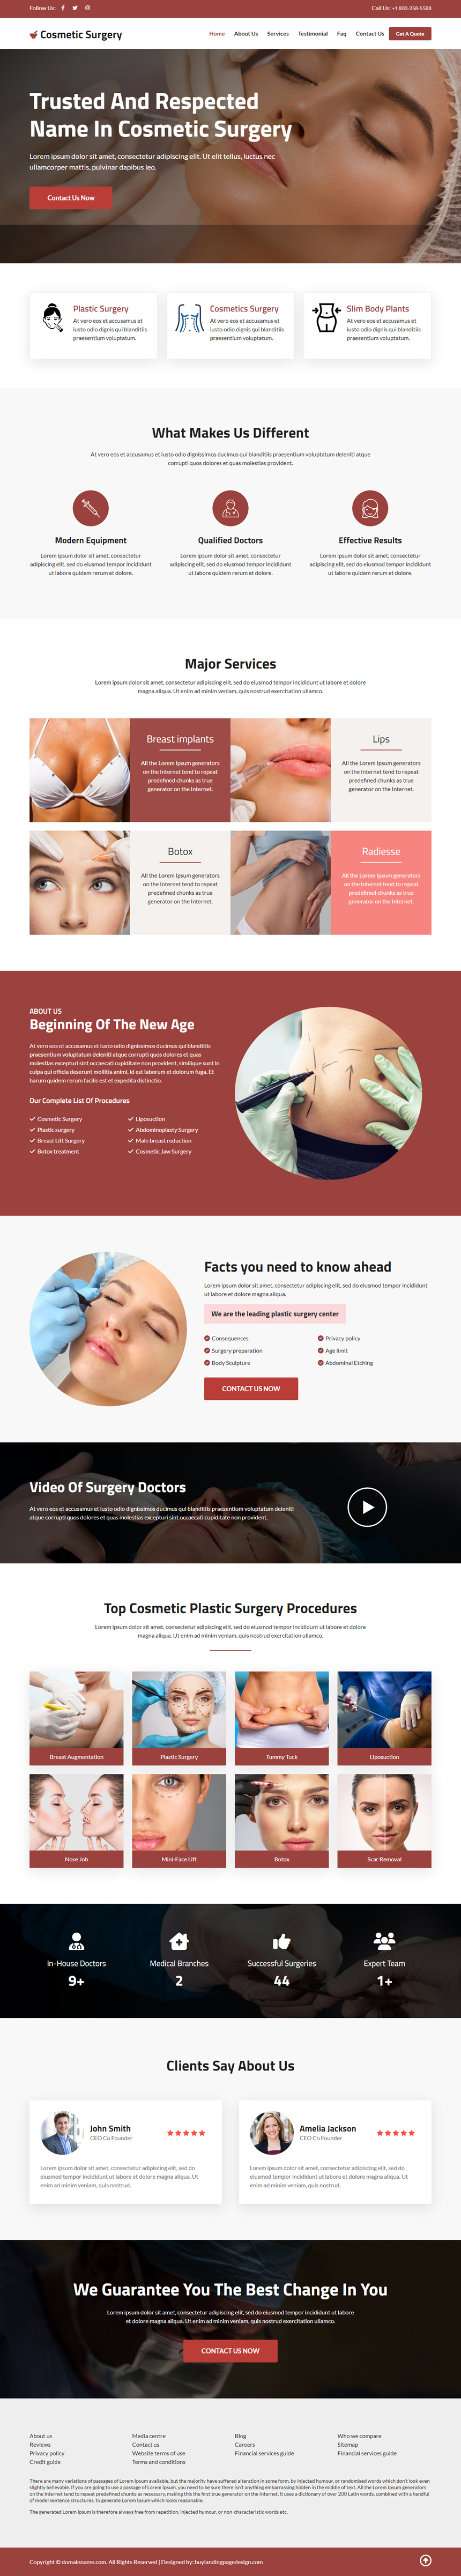 cosmetic plastic surgery procedures responsive website design